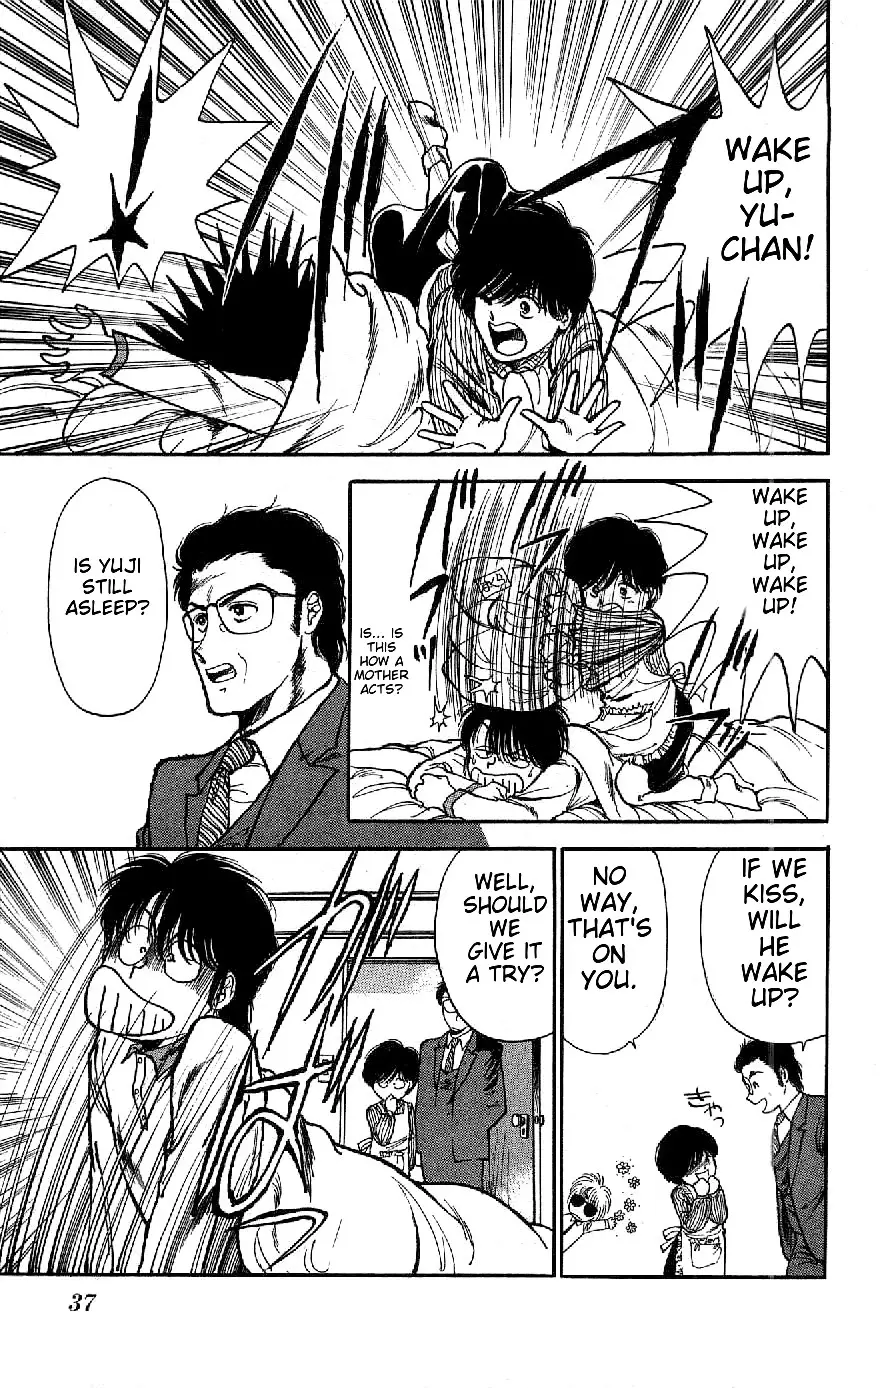 Yagami's Family Affairs - 2 page 4-0154e49e